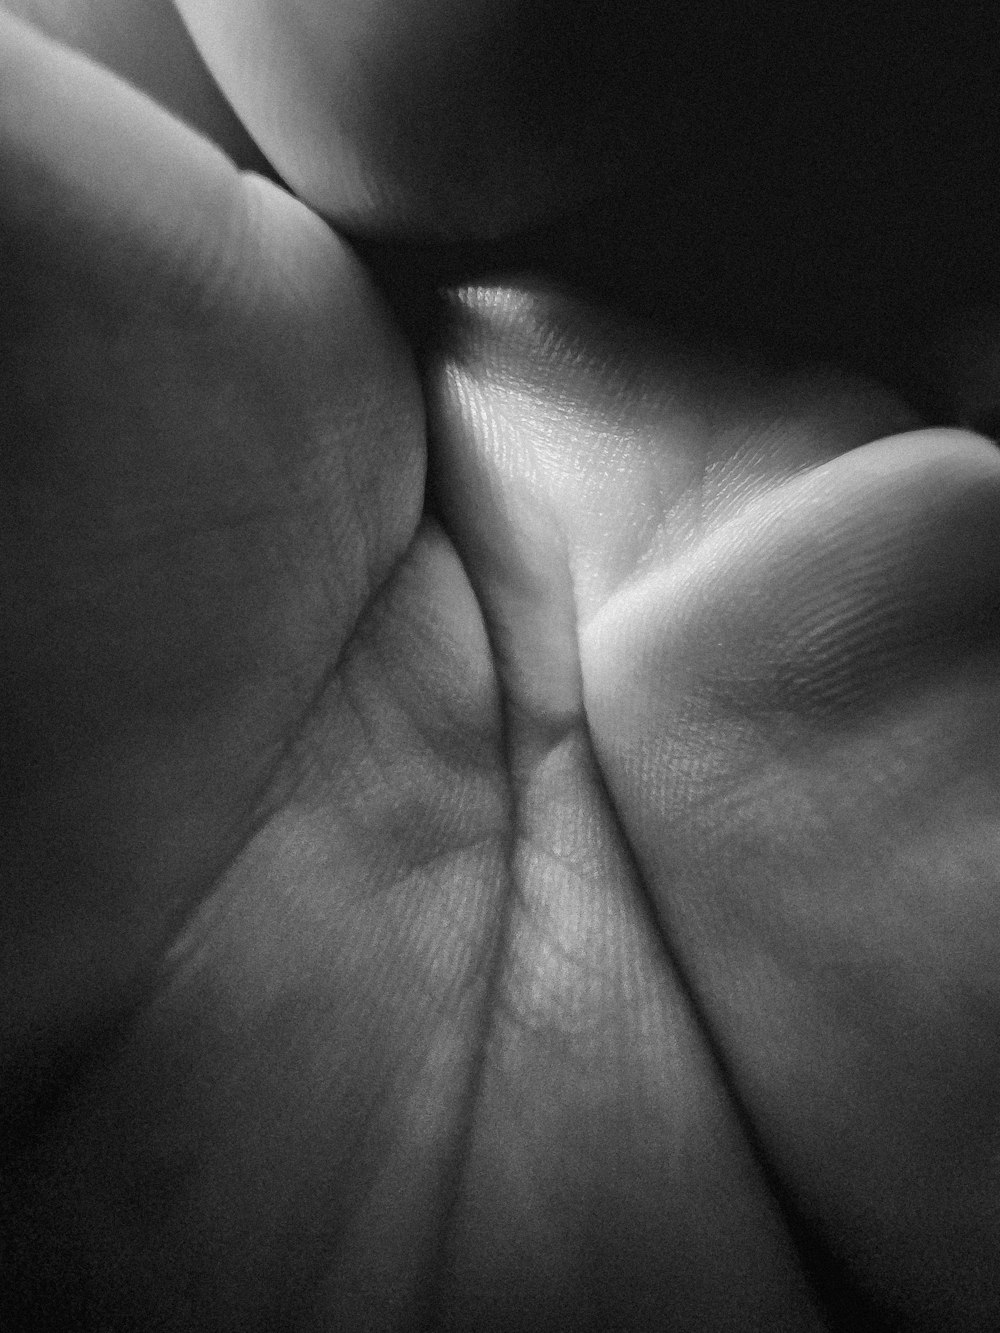 Una foto en blanco y negro de la mano de una persona